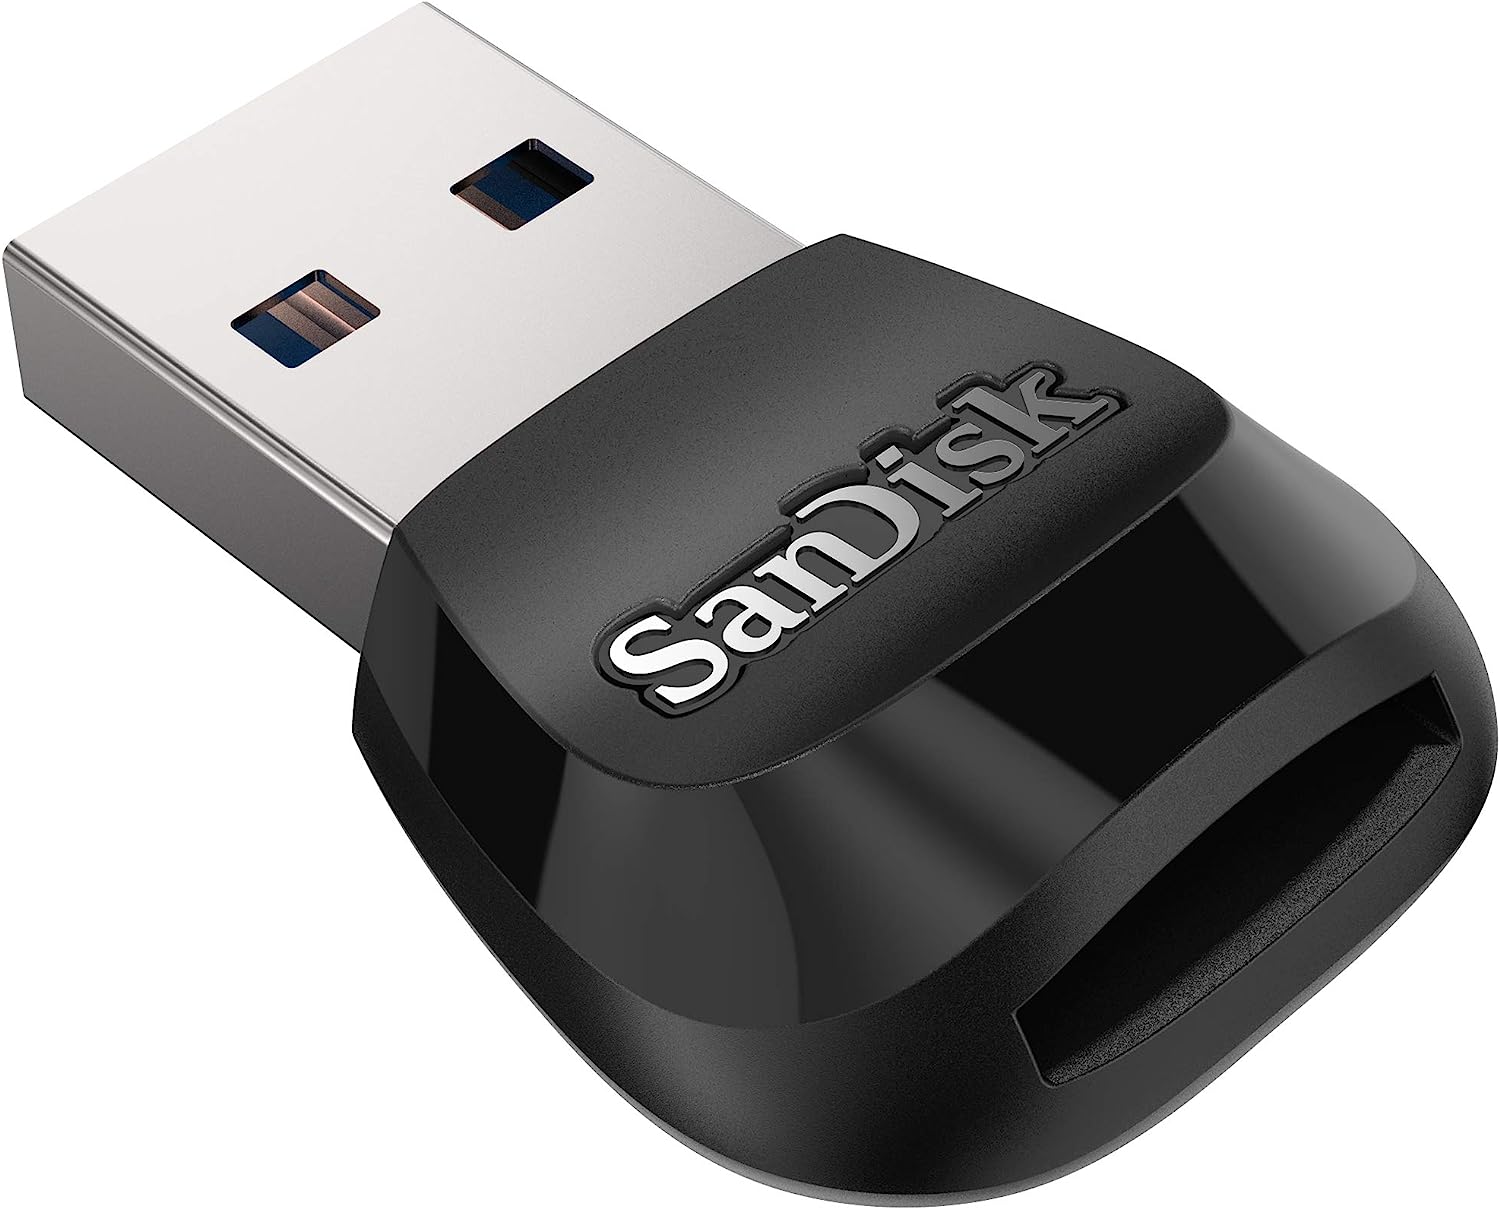 SanDisk Mobile Mate USB 3.0 Reader, Black - SDDR-B531-GN6NN